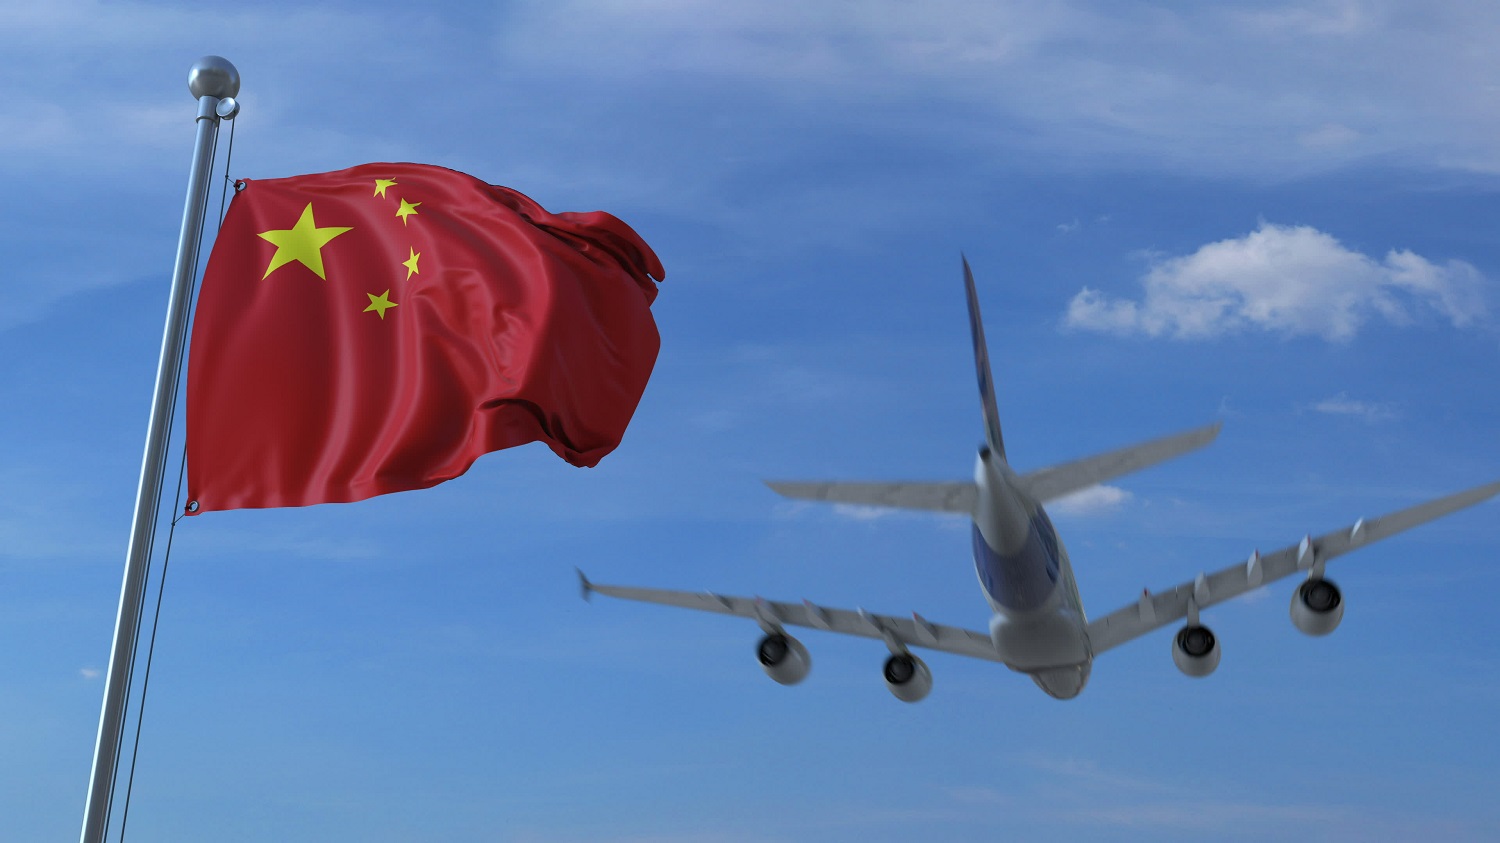 Một chiếc máy bay thương mại bay phía sau lá cờ Trung Quốc tung bay trong gió.